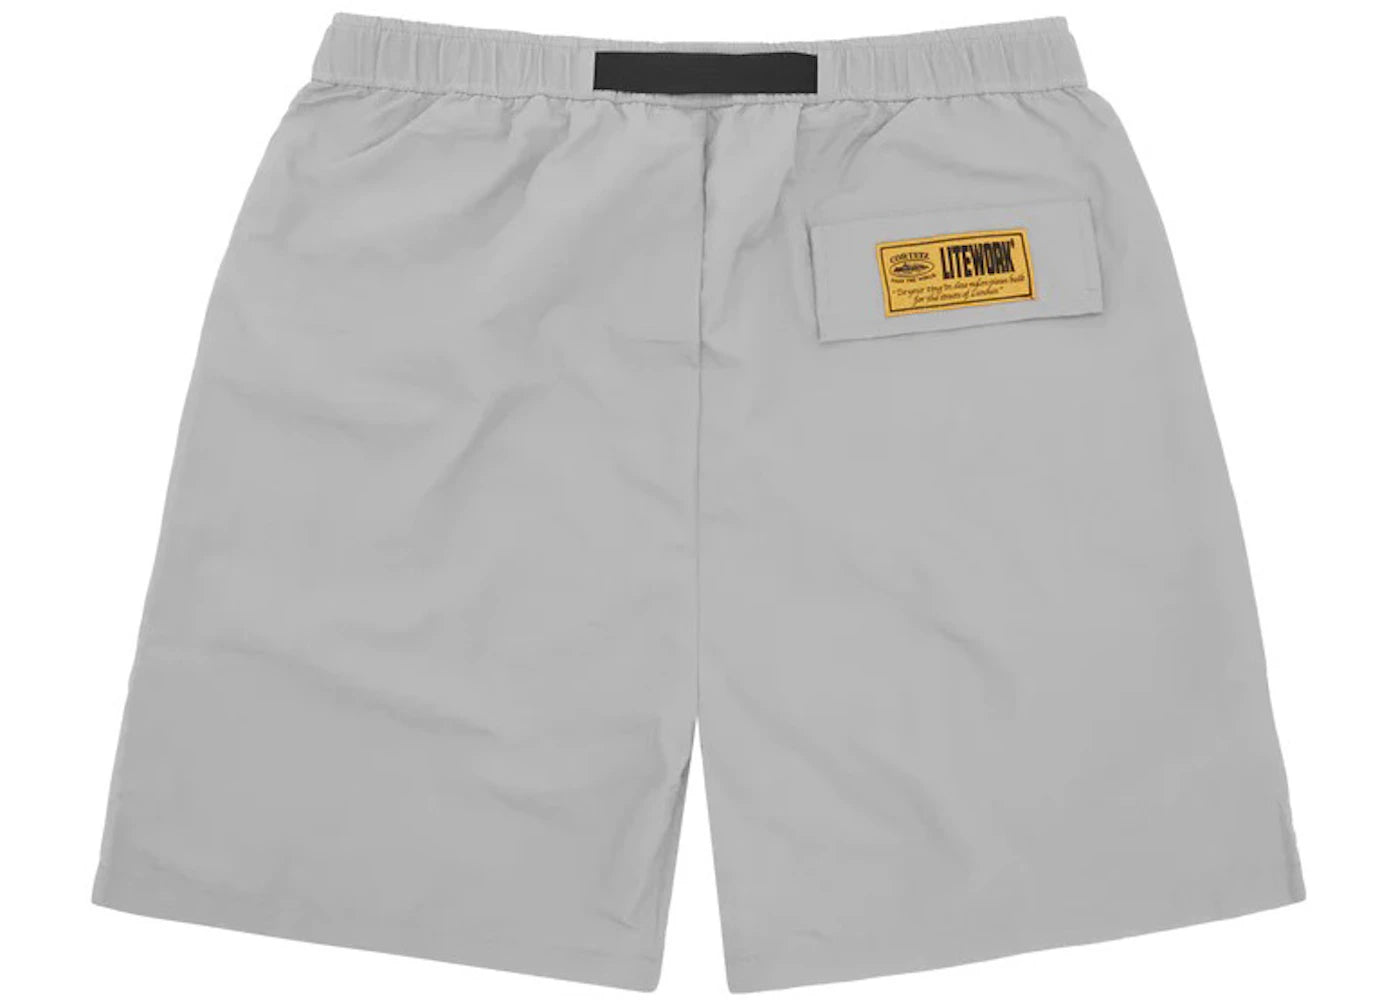 Corteiz CRTZ Nylon Shorts - Grey/Red